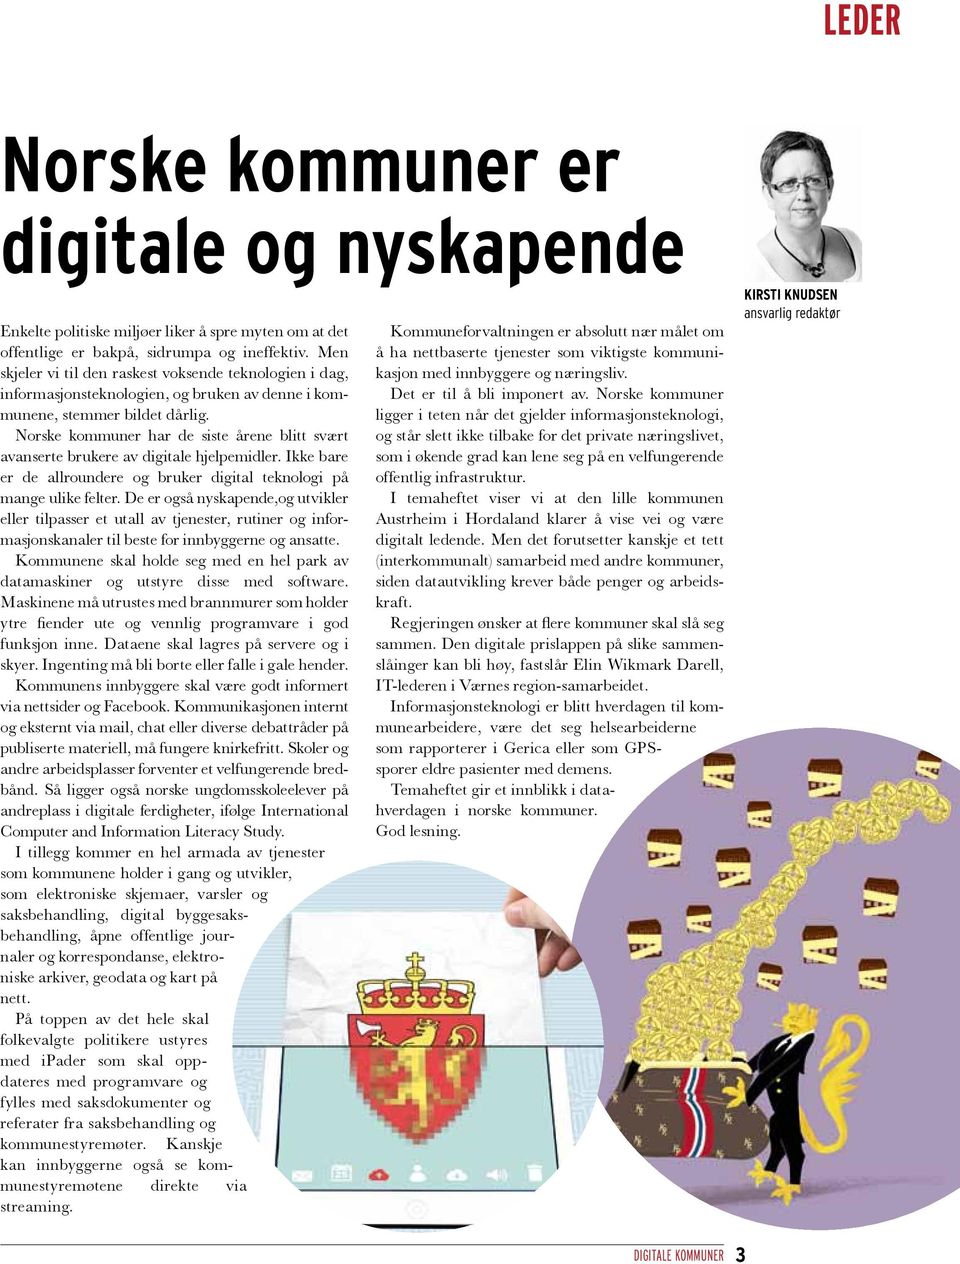 Norske kommuner har de siste årene blitt svært avanserte brukere av digitale hjelpemidler. Ikke bare er de allroundere og bruker digital teknologi på mange ulike felter.